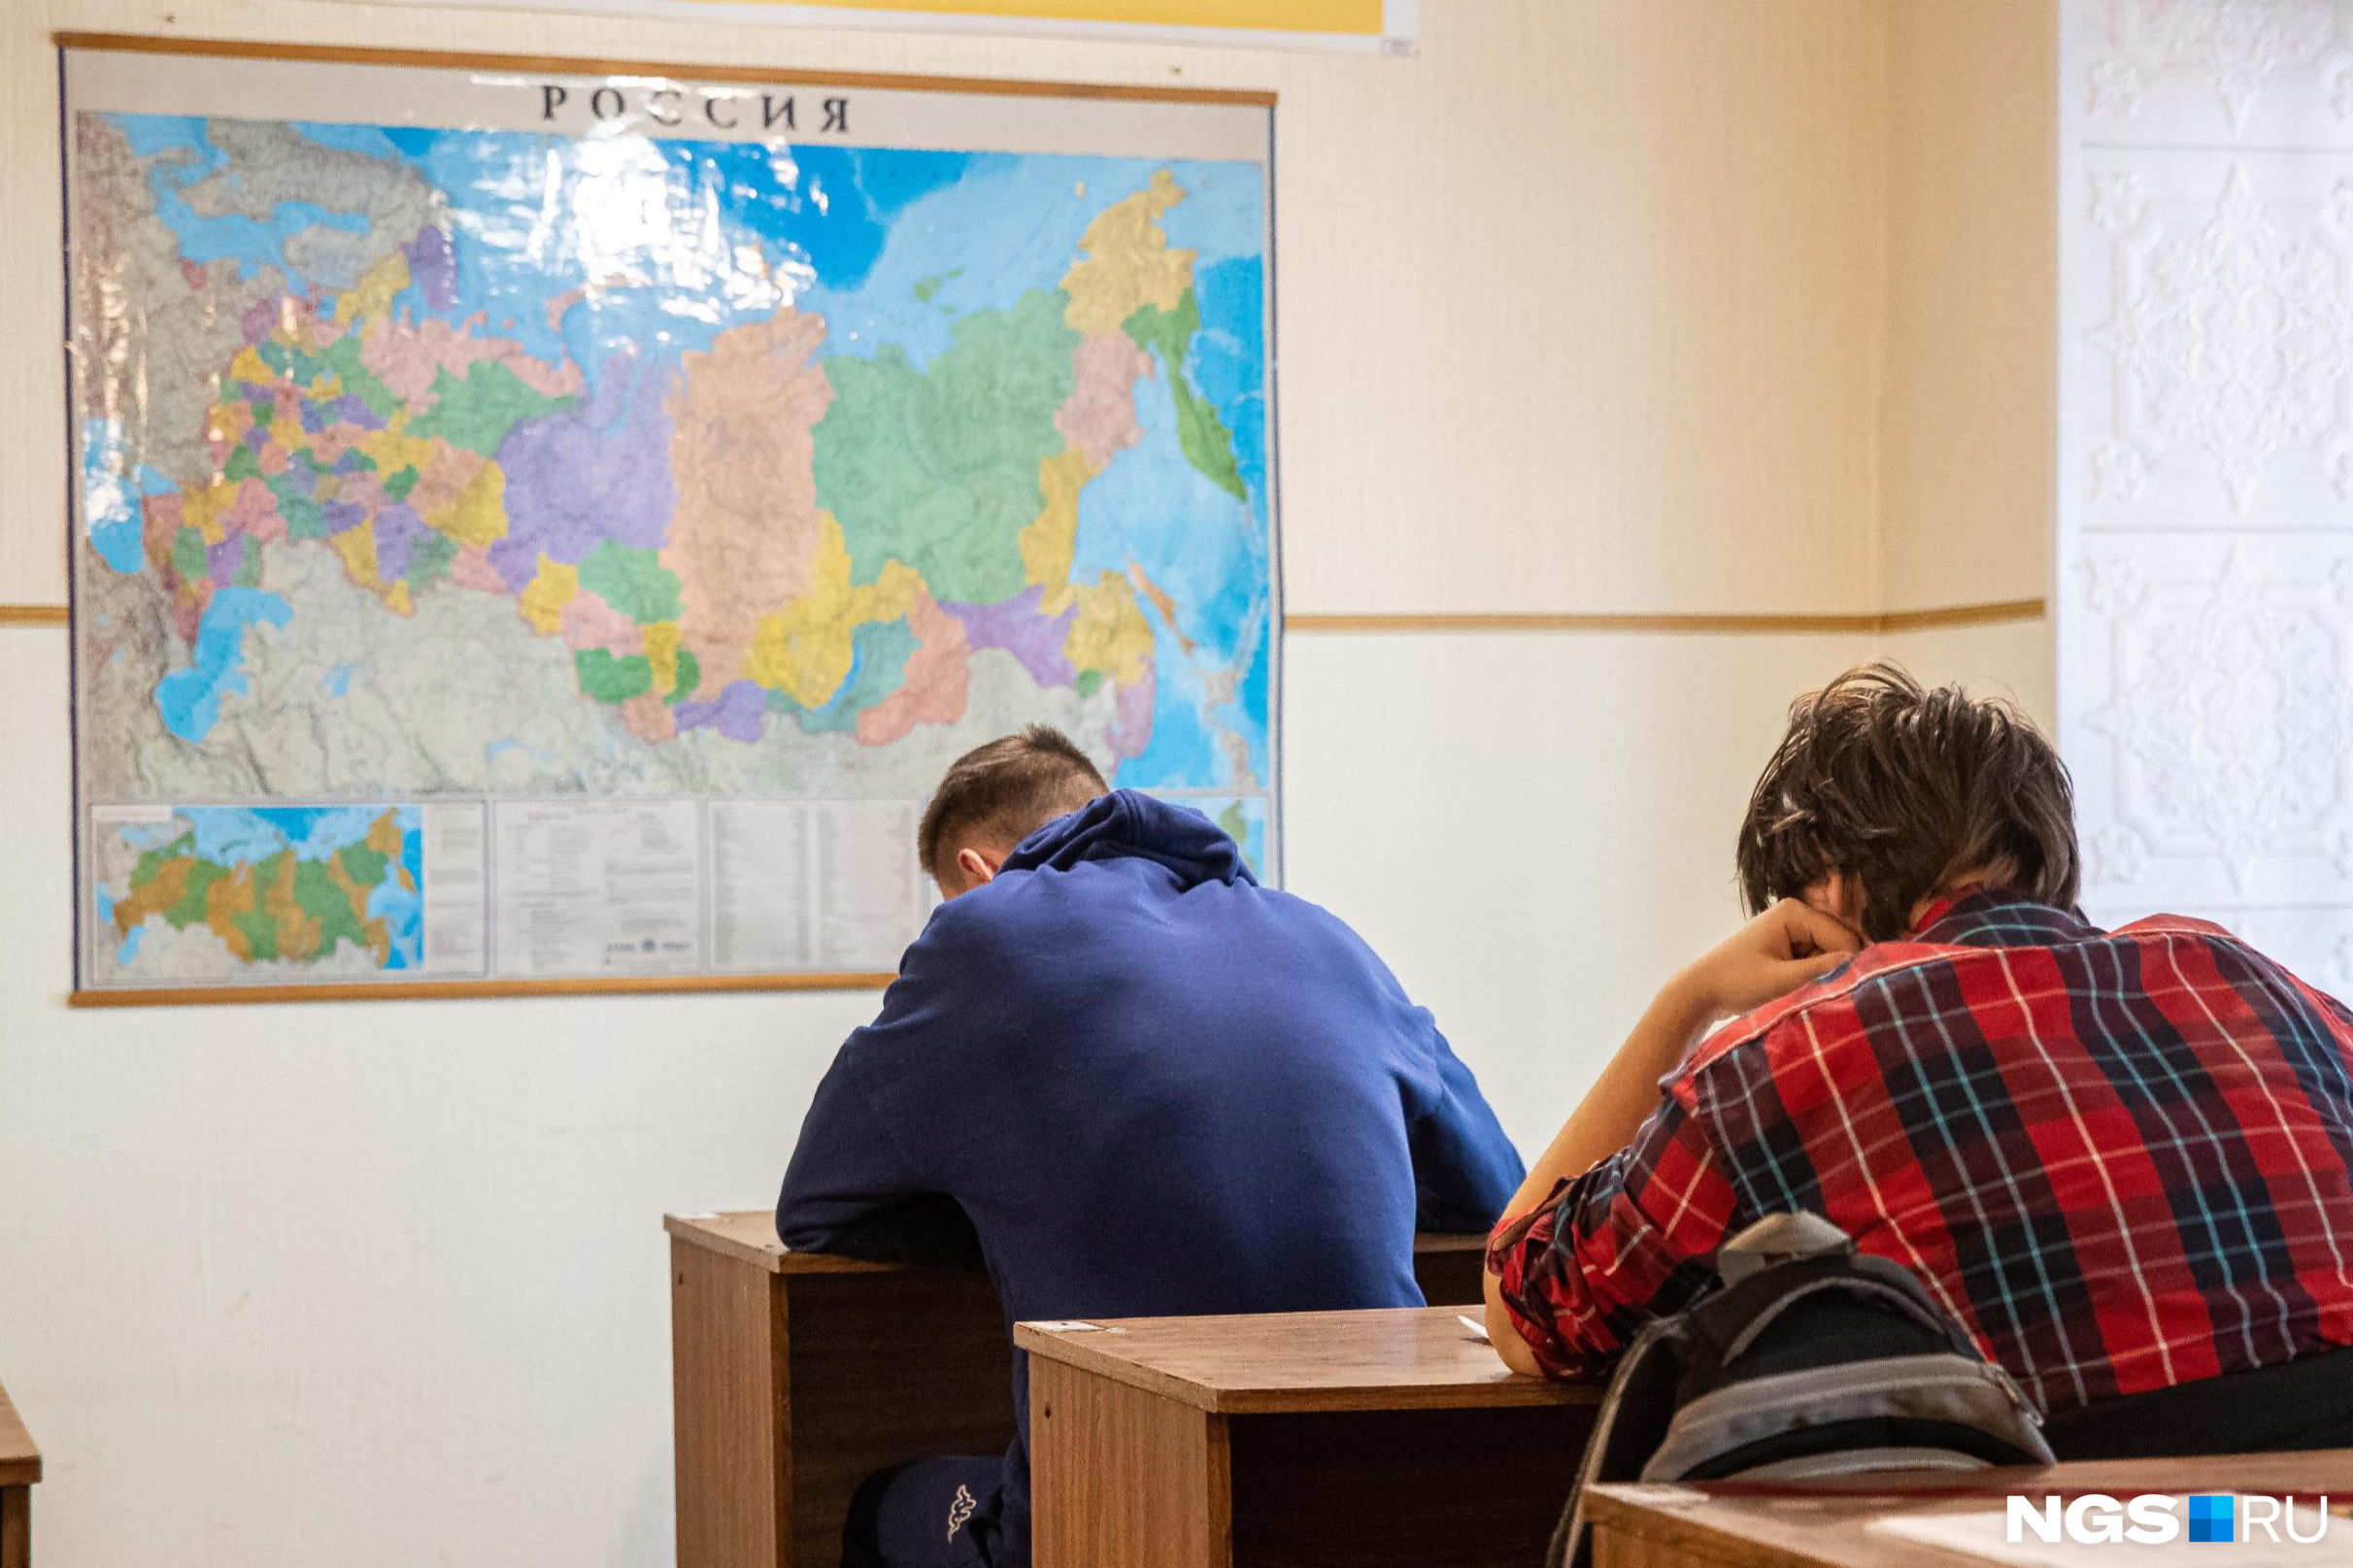 Очень сложный тест по географии России: проверьте, как вы знаете родную страну